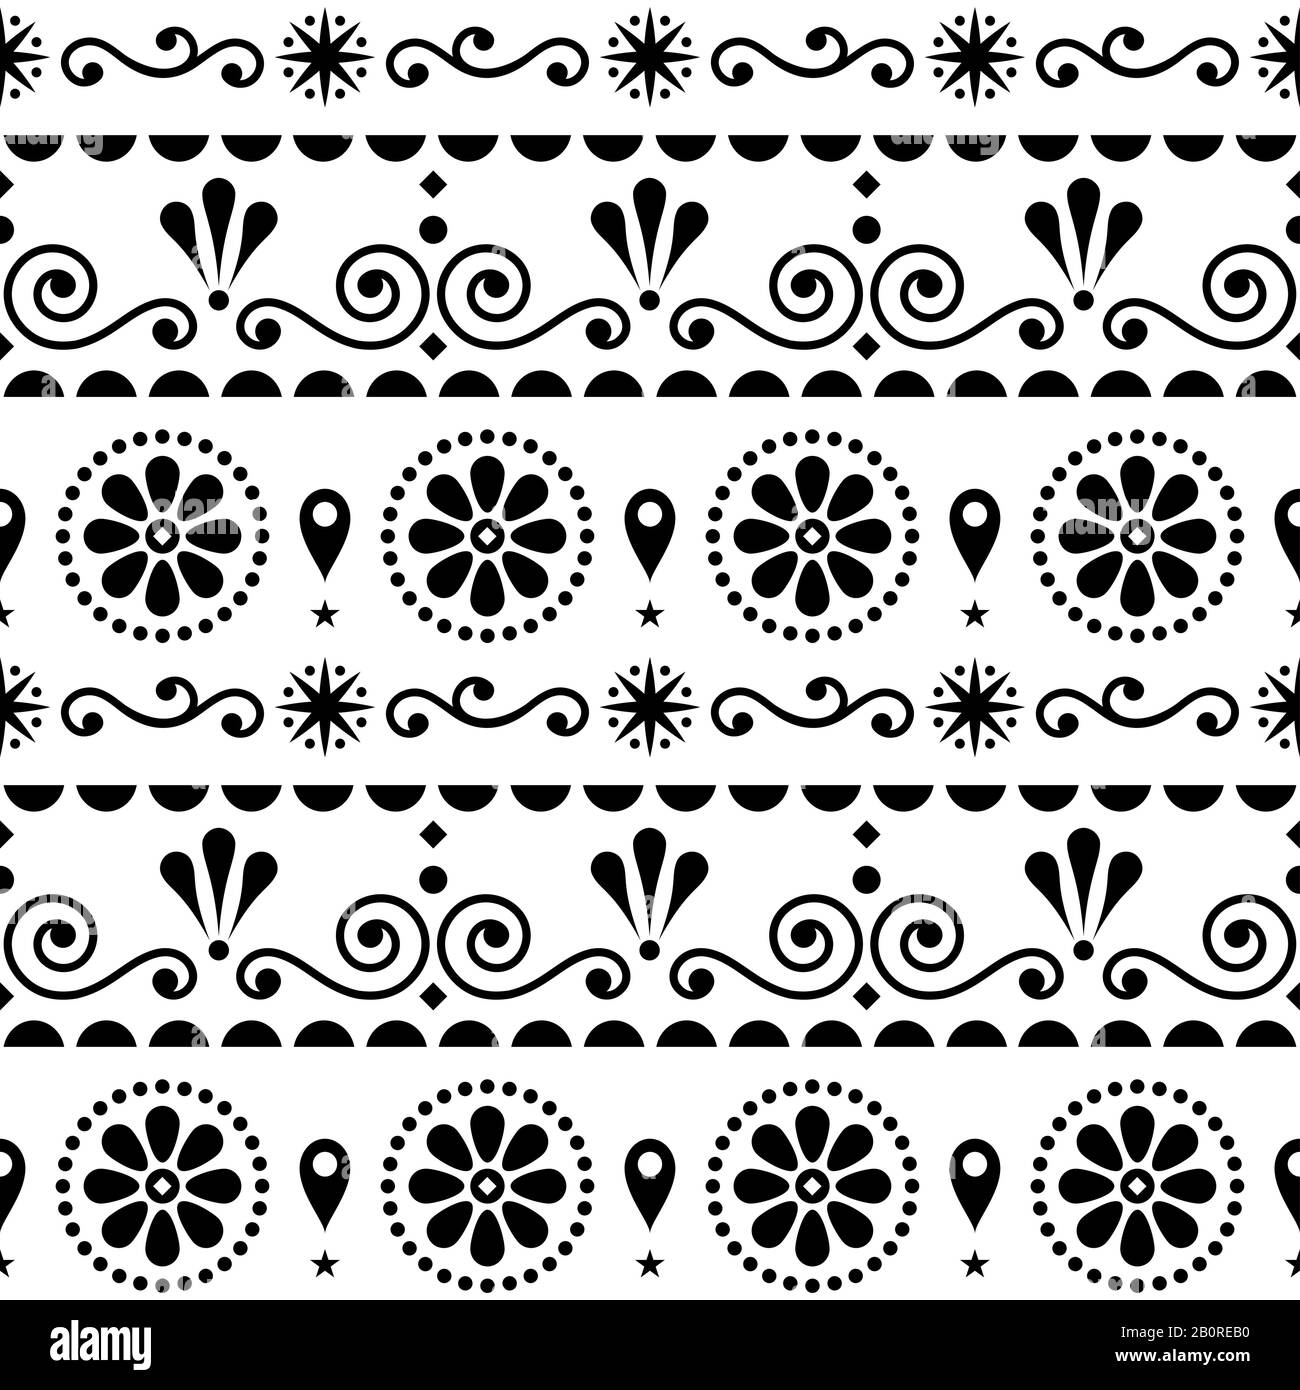 Arte popolare in stile floreale scandinavo motivo vettoriale senza cuciture con vortici, fiori e forme geometriche in bianco e nero Illustrazione Vettoriale